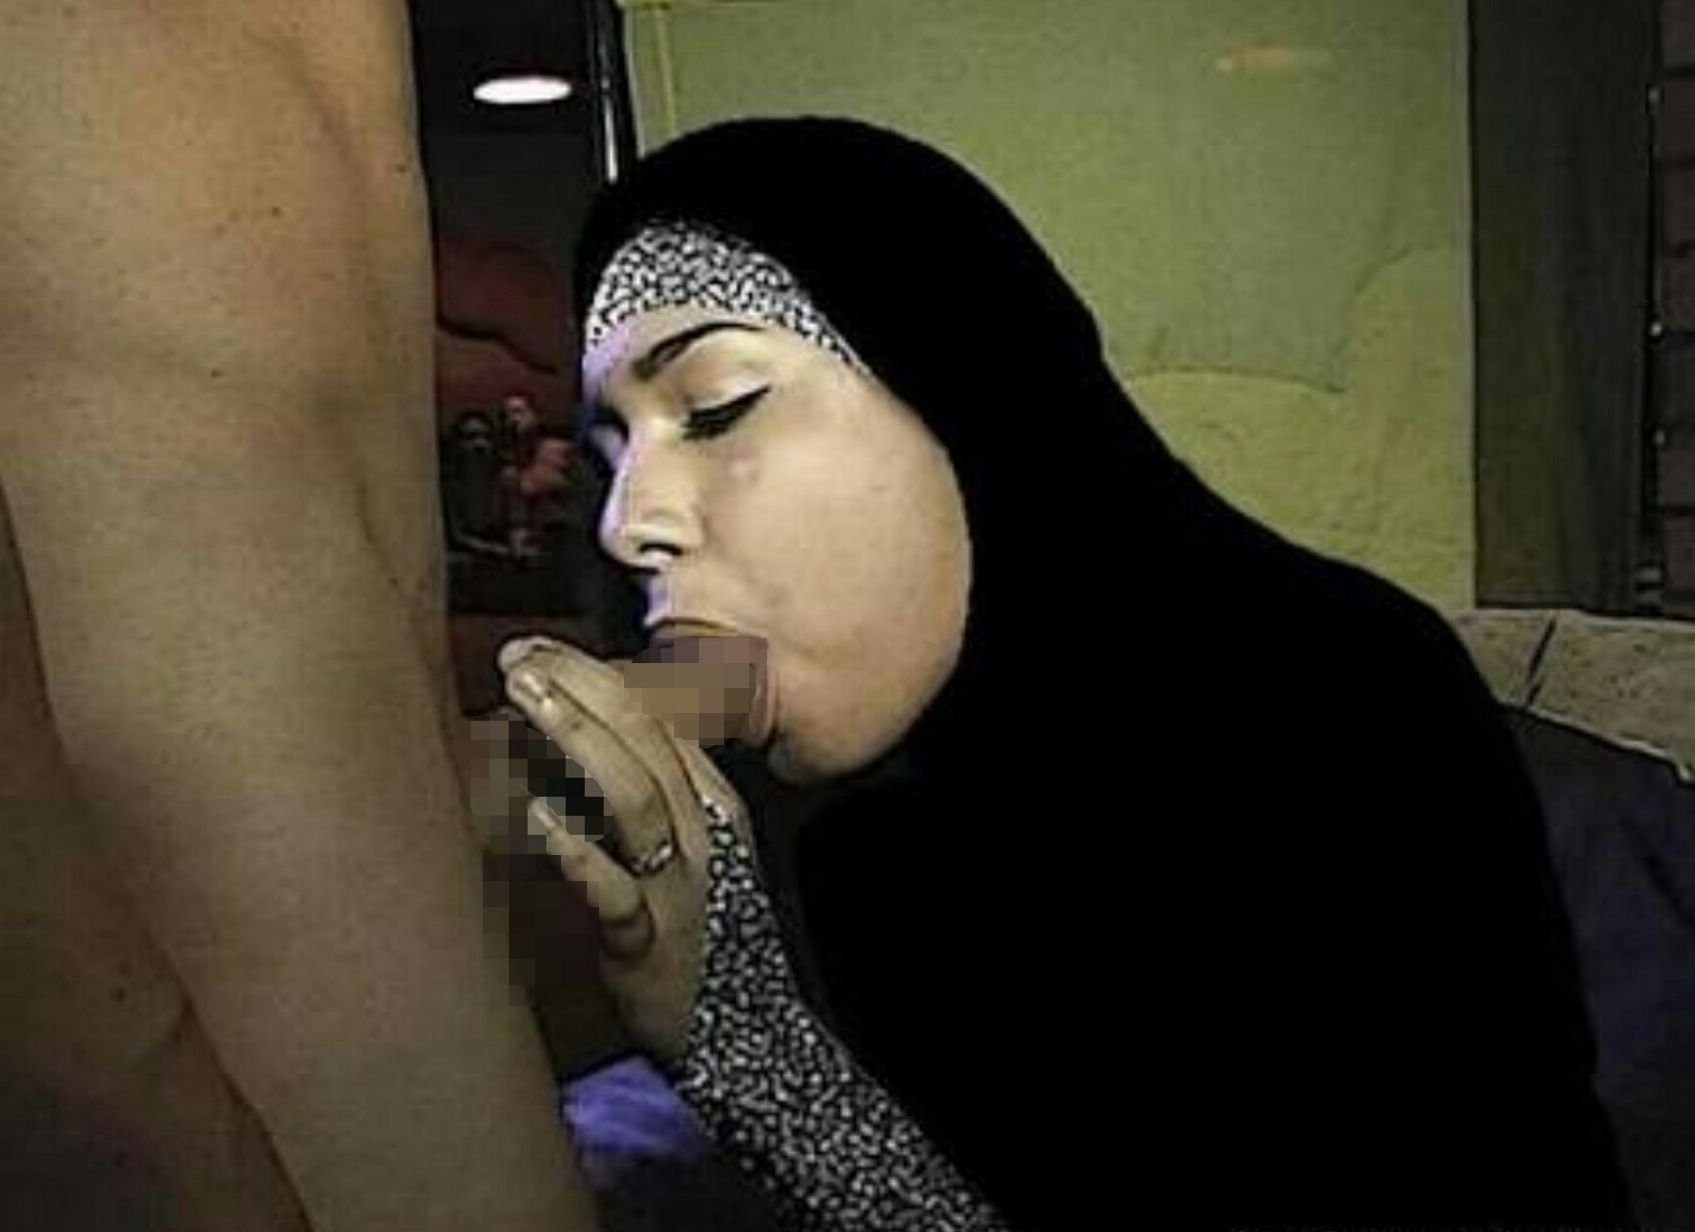 Palestina Sex Porn - Sex Palestina (84 photos) - Ð¿Ð¾Ñ€Ð½Ð¾